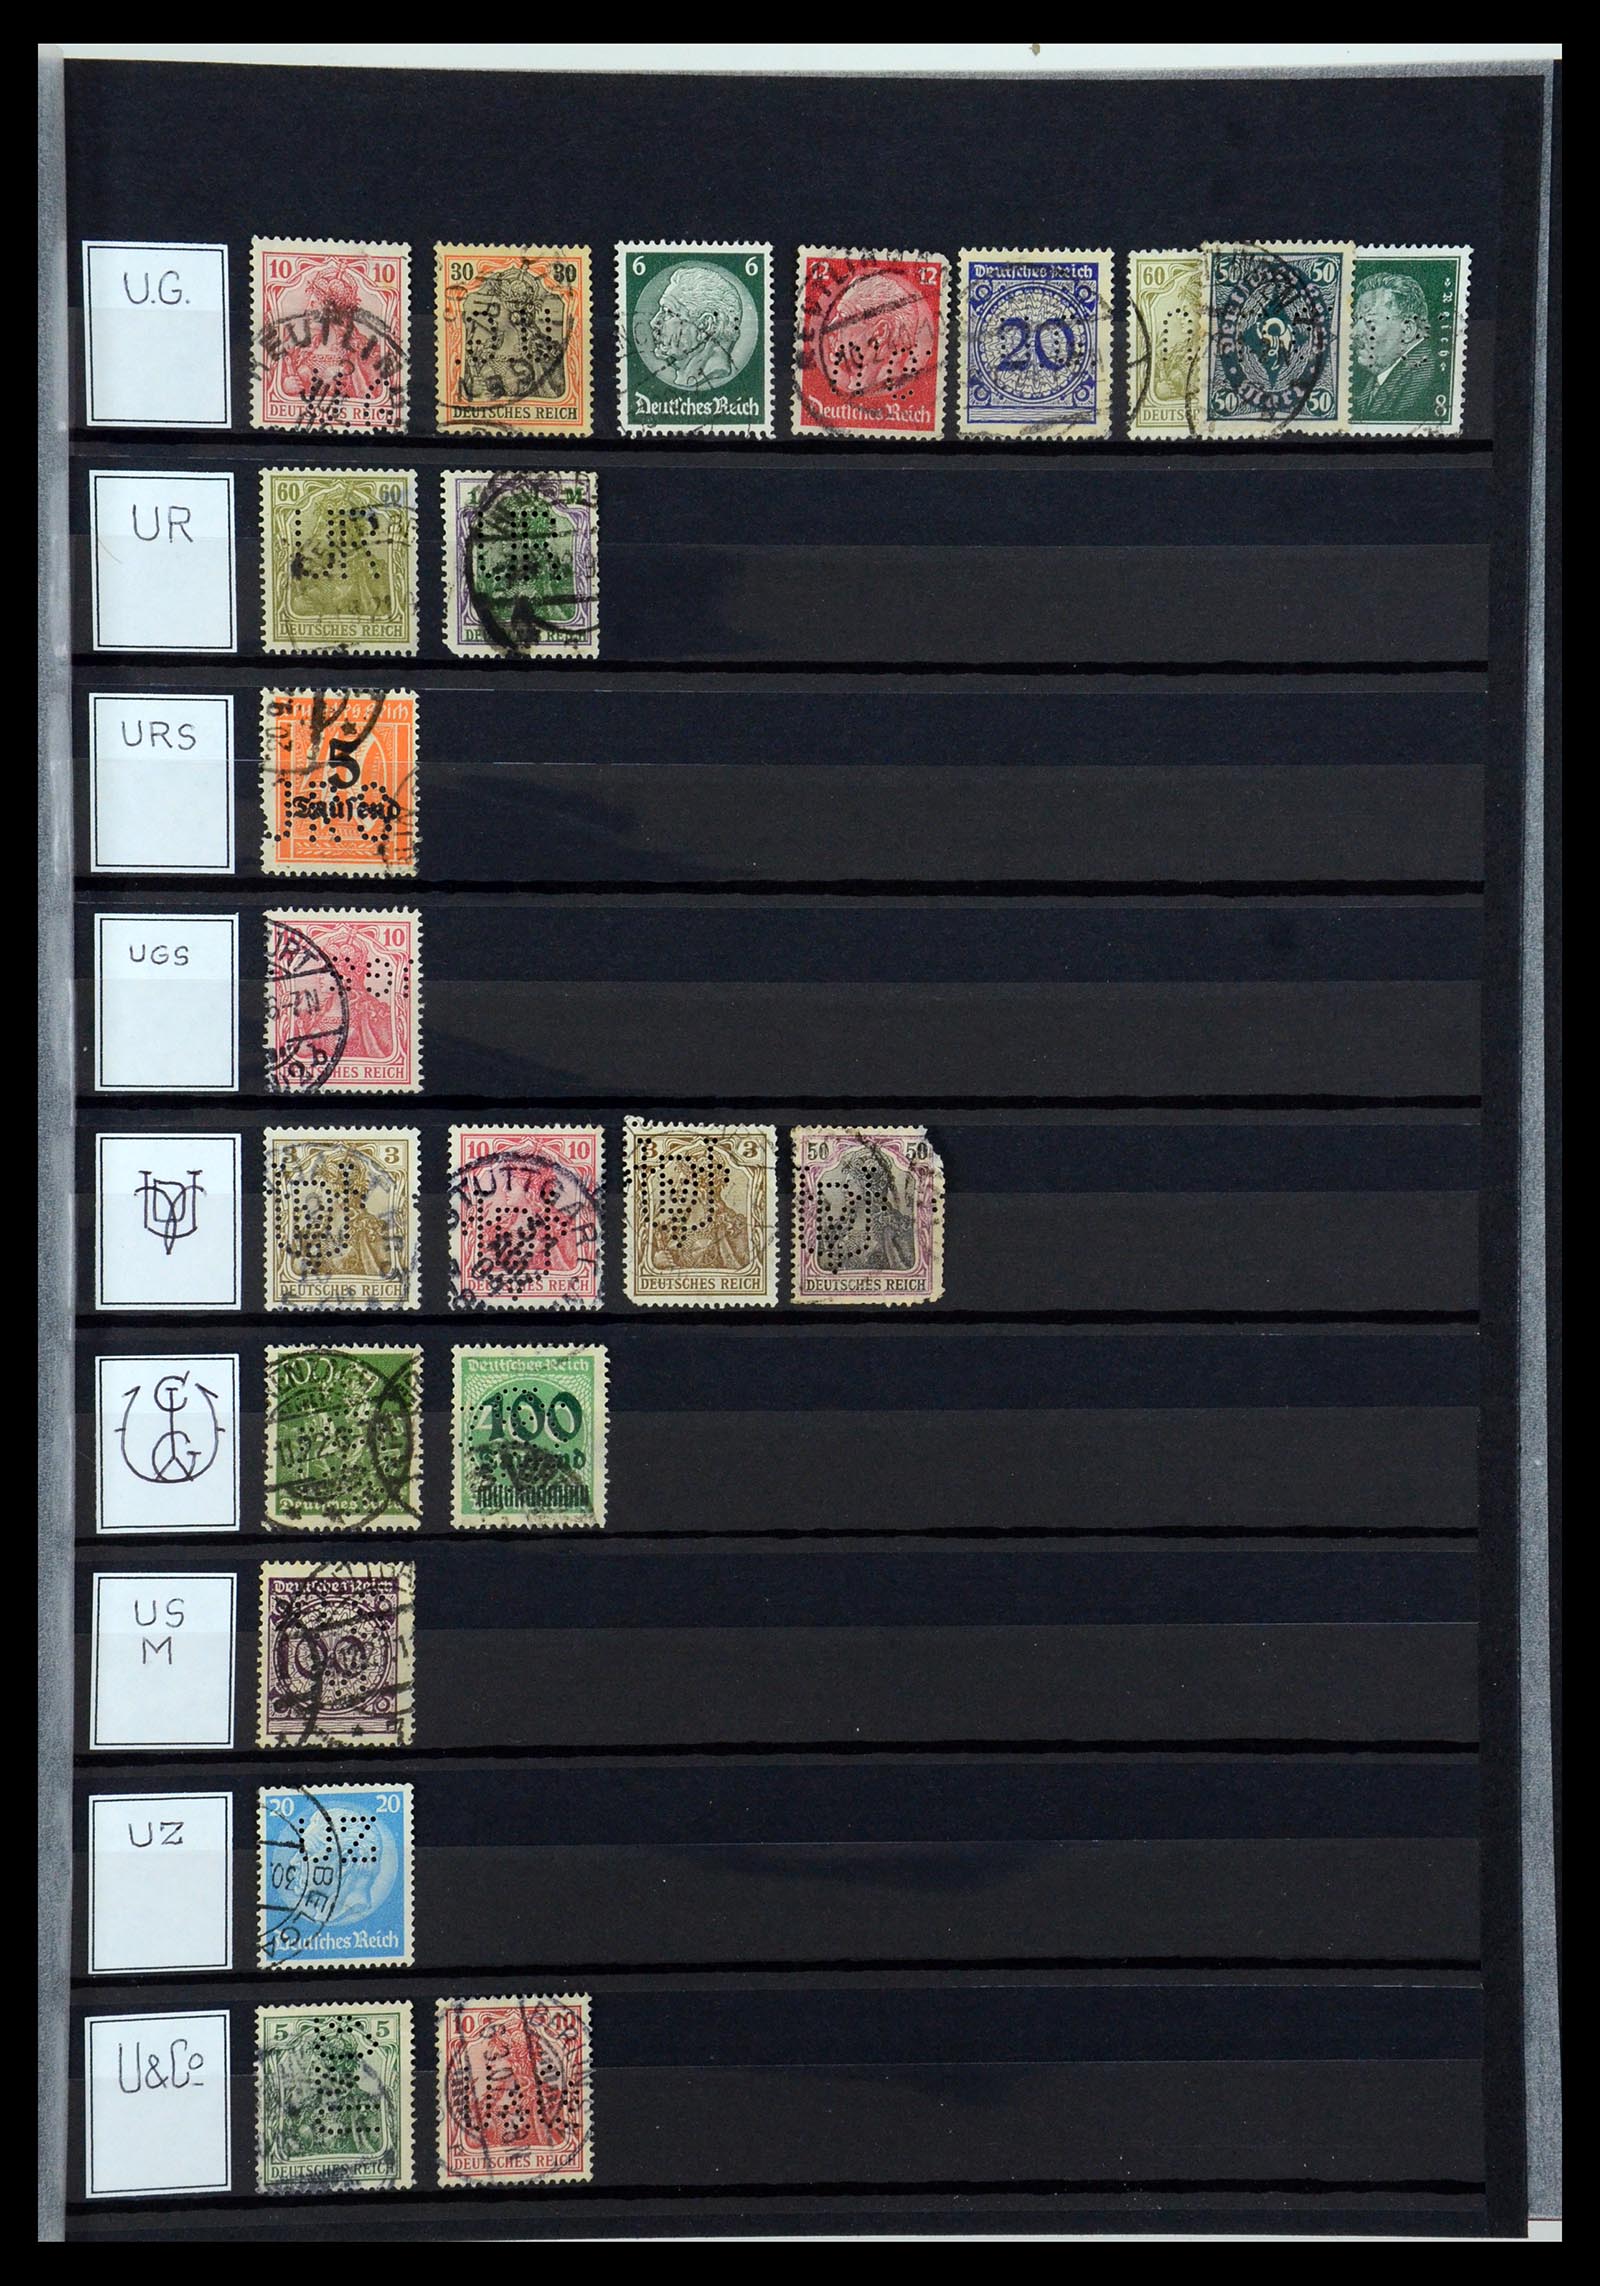 36405 322 - Stamp collection 36405 German Reich perfins 1880-1945.